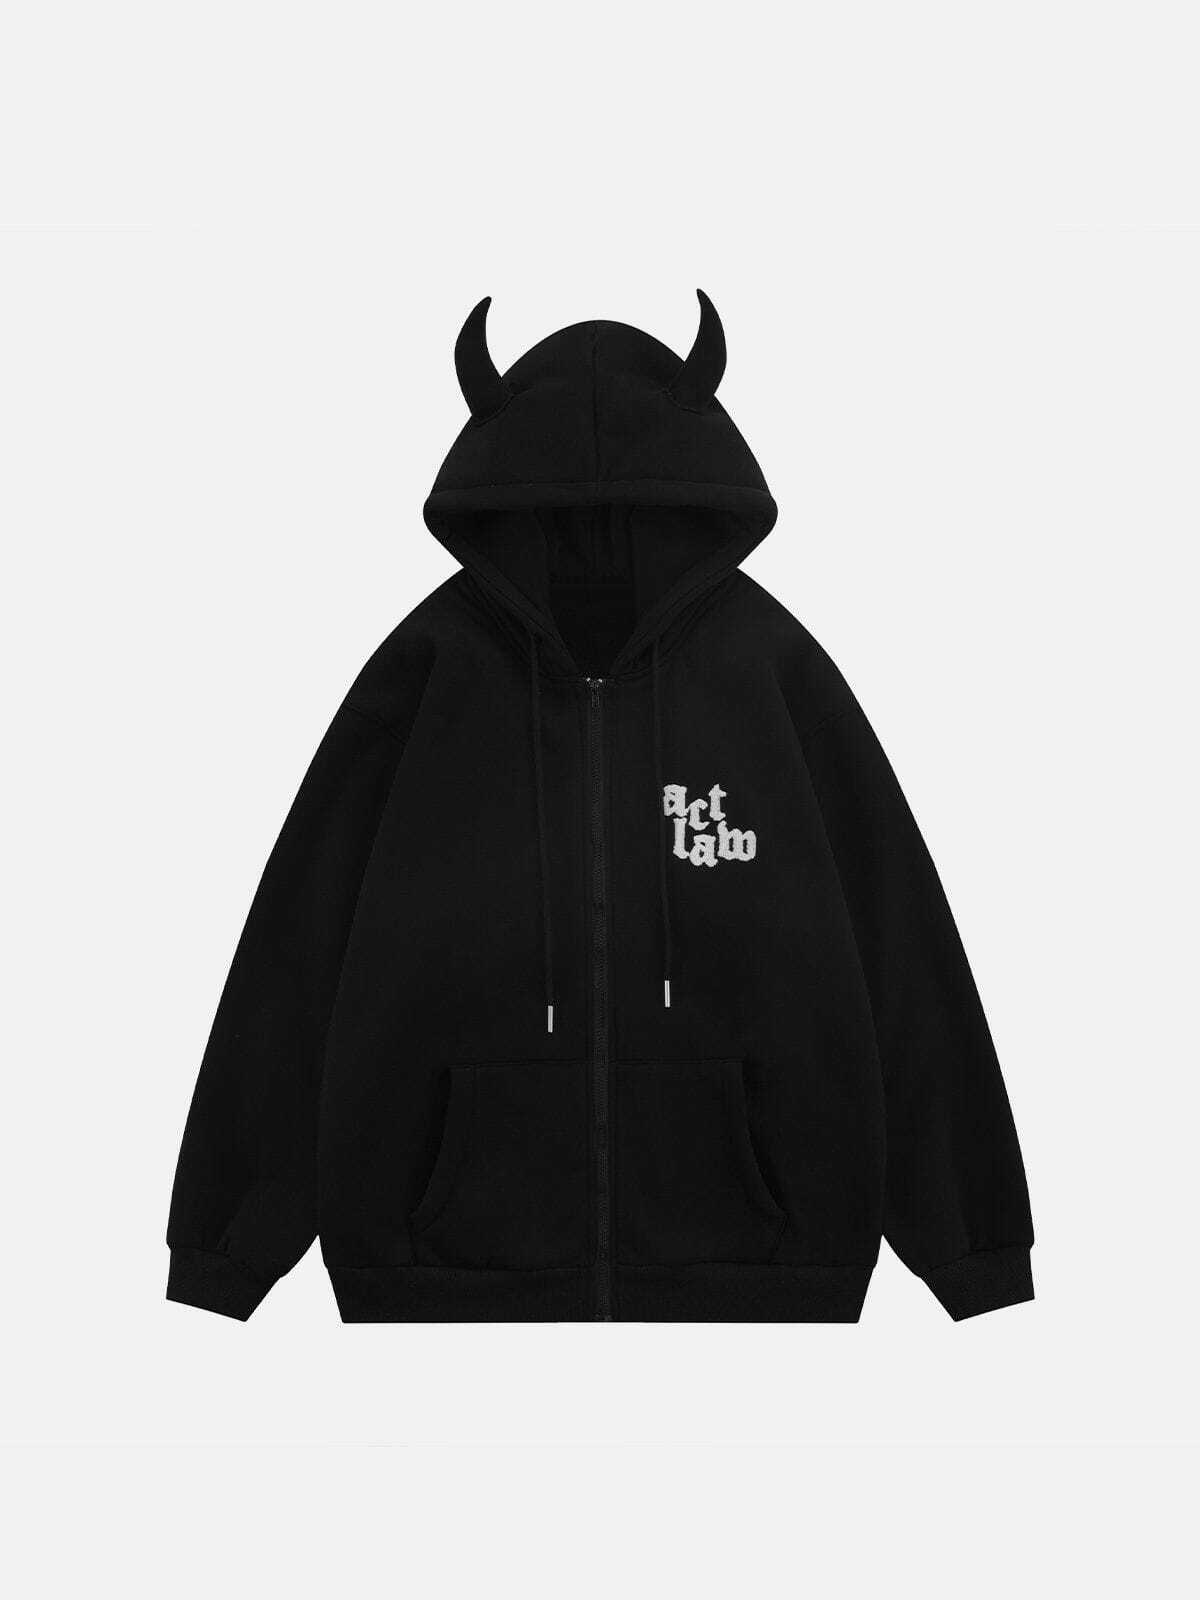 sleek devil head hoodie edgy streetwear icon 4979